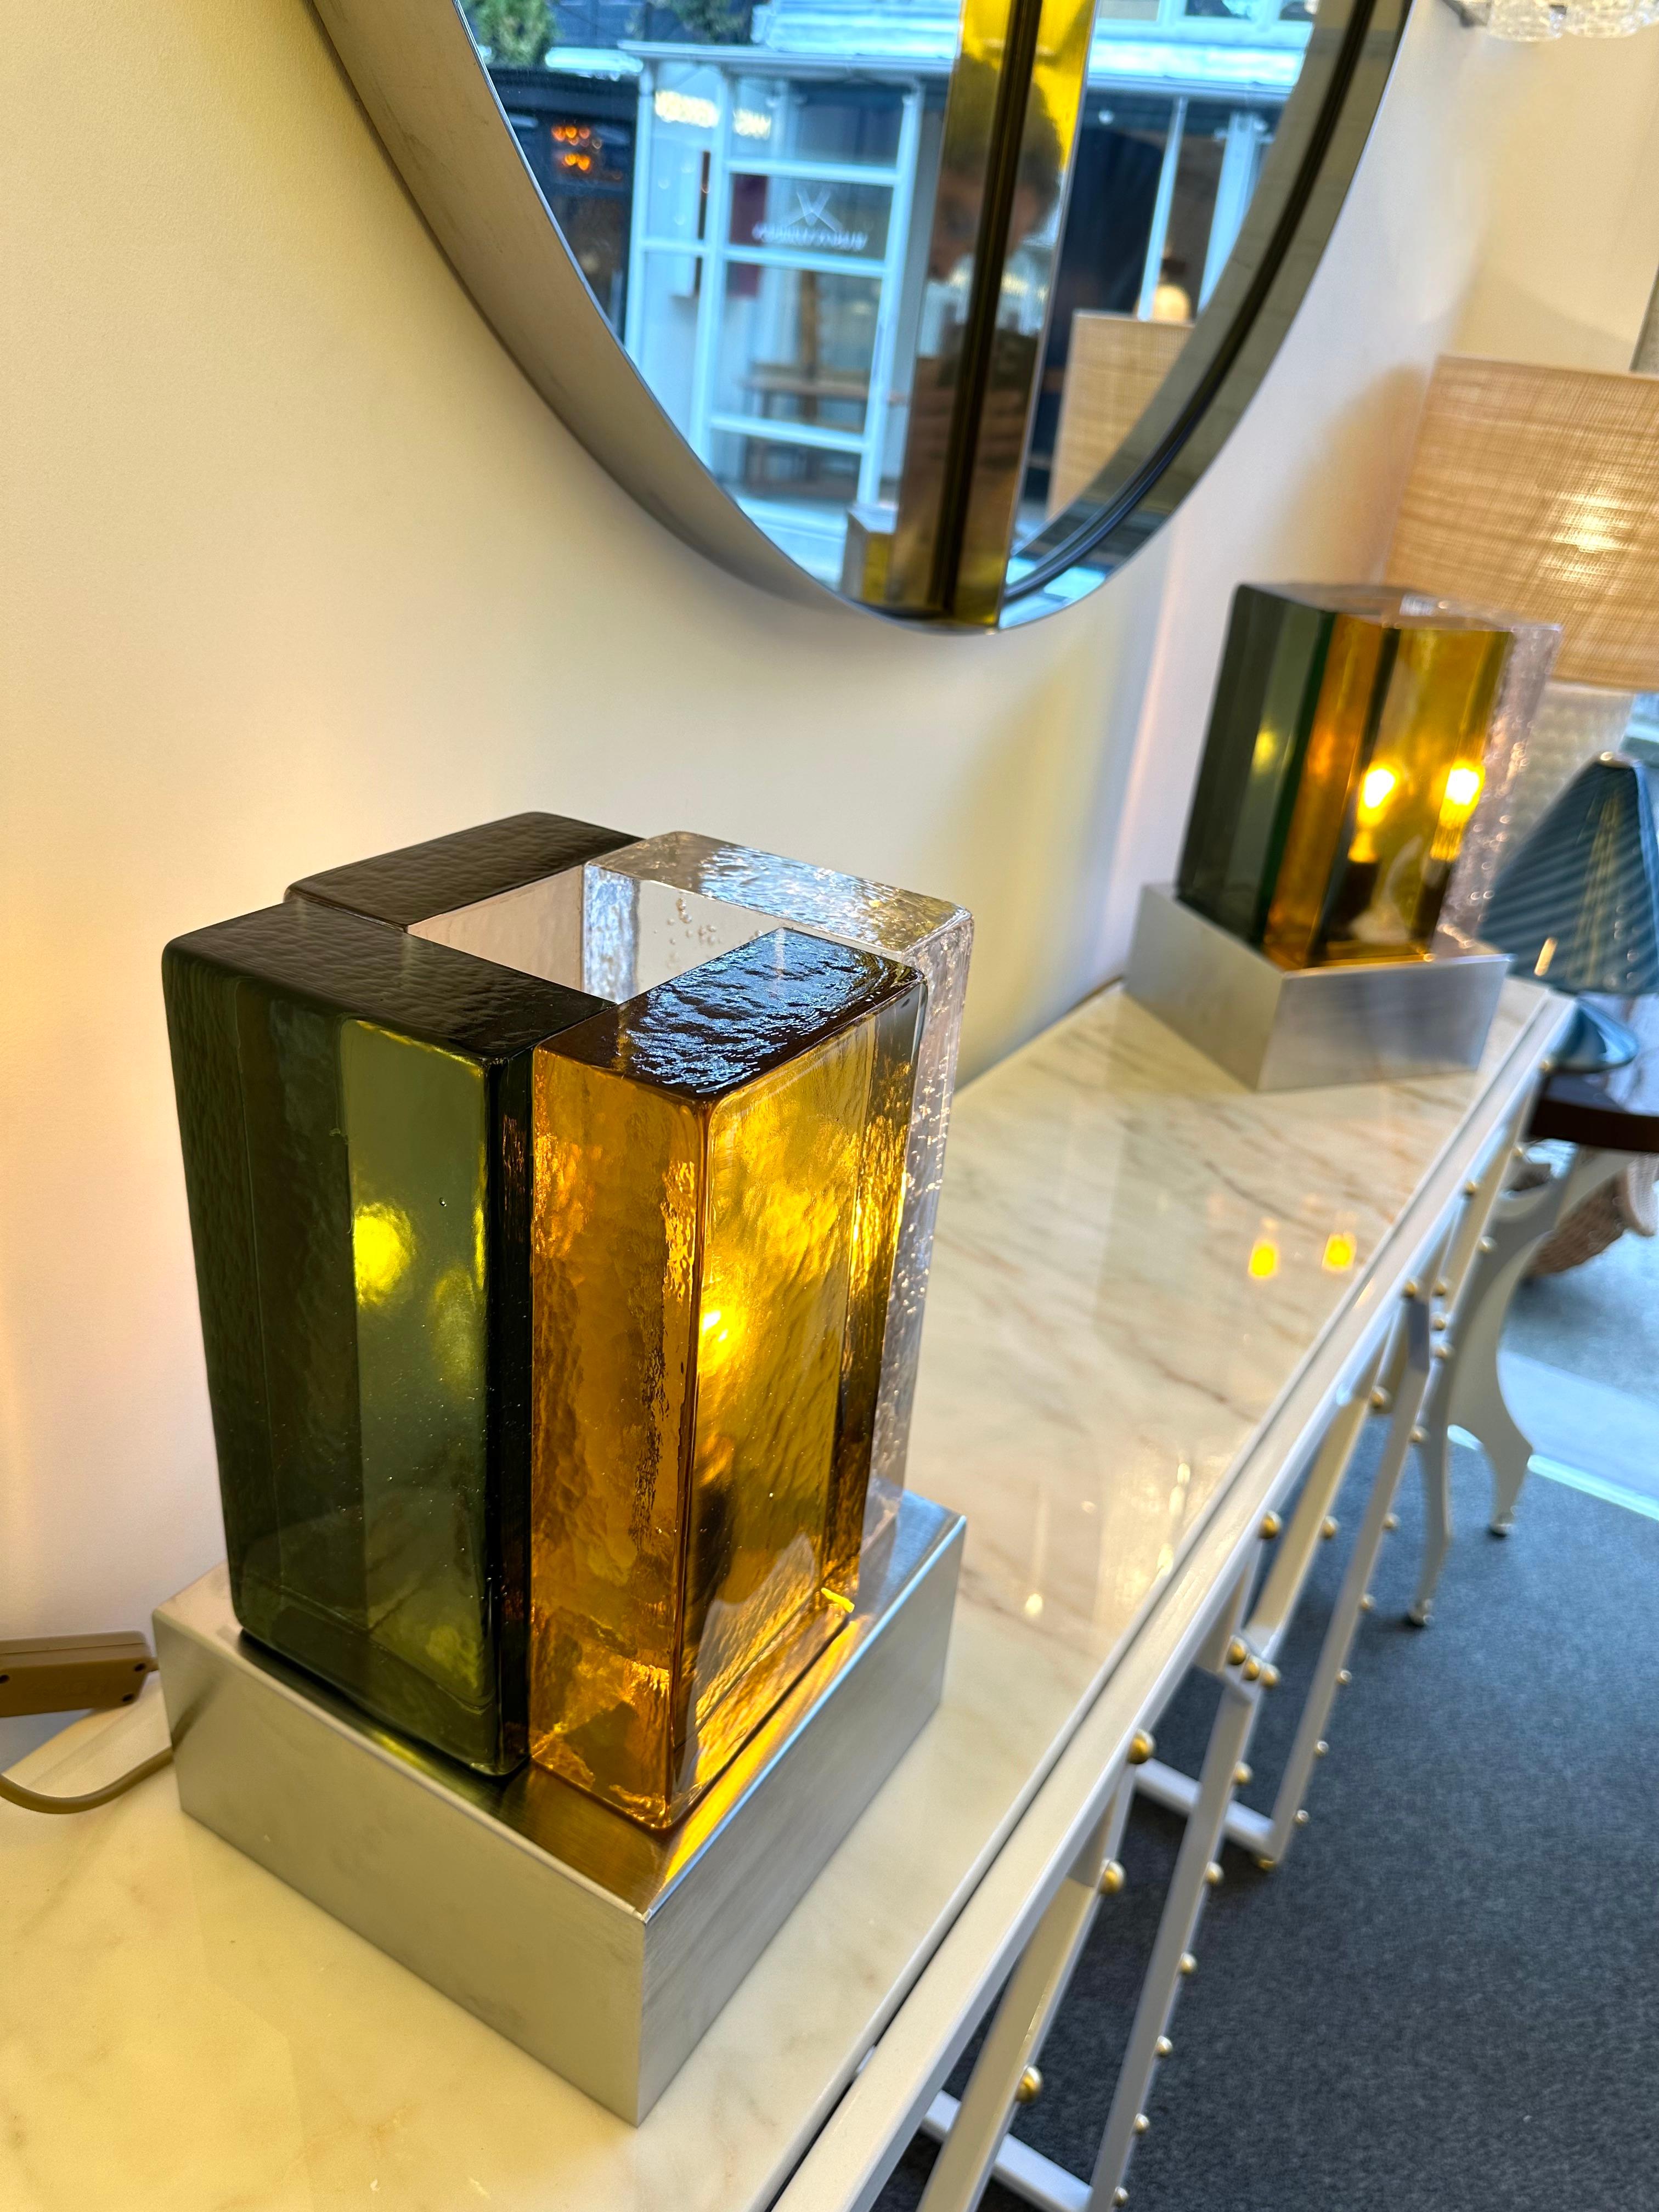 Paire de lampes de table ou de chevet contemporaines en verre de Murano cubique pressé vert ambre et clair bulle et base en acier inoxydable. Peu d'ateliers de production artisanale exclusive de design italien. Dans le style Space Age de la